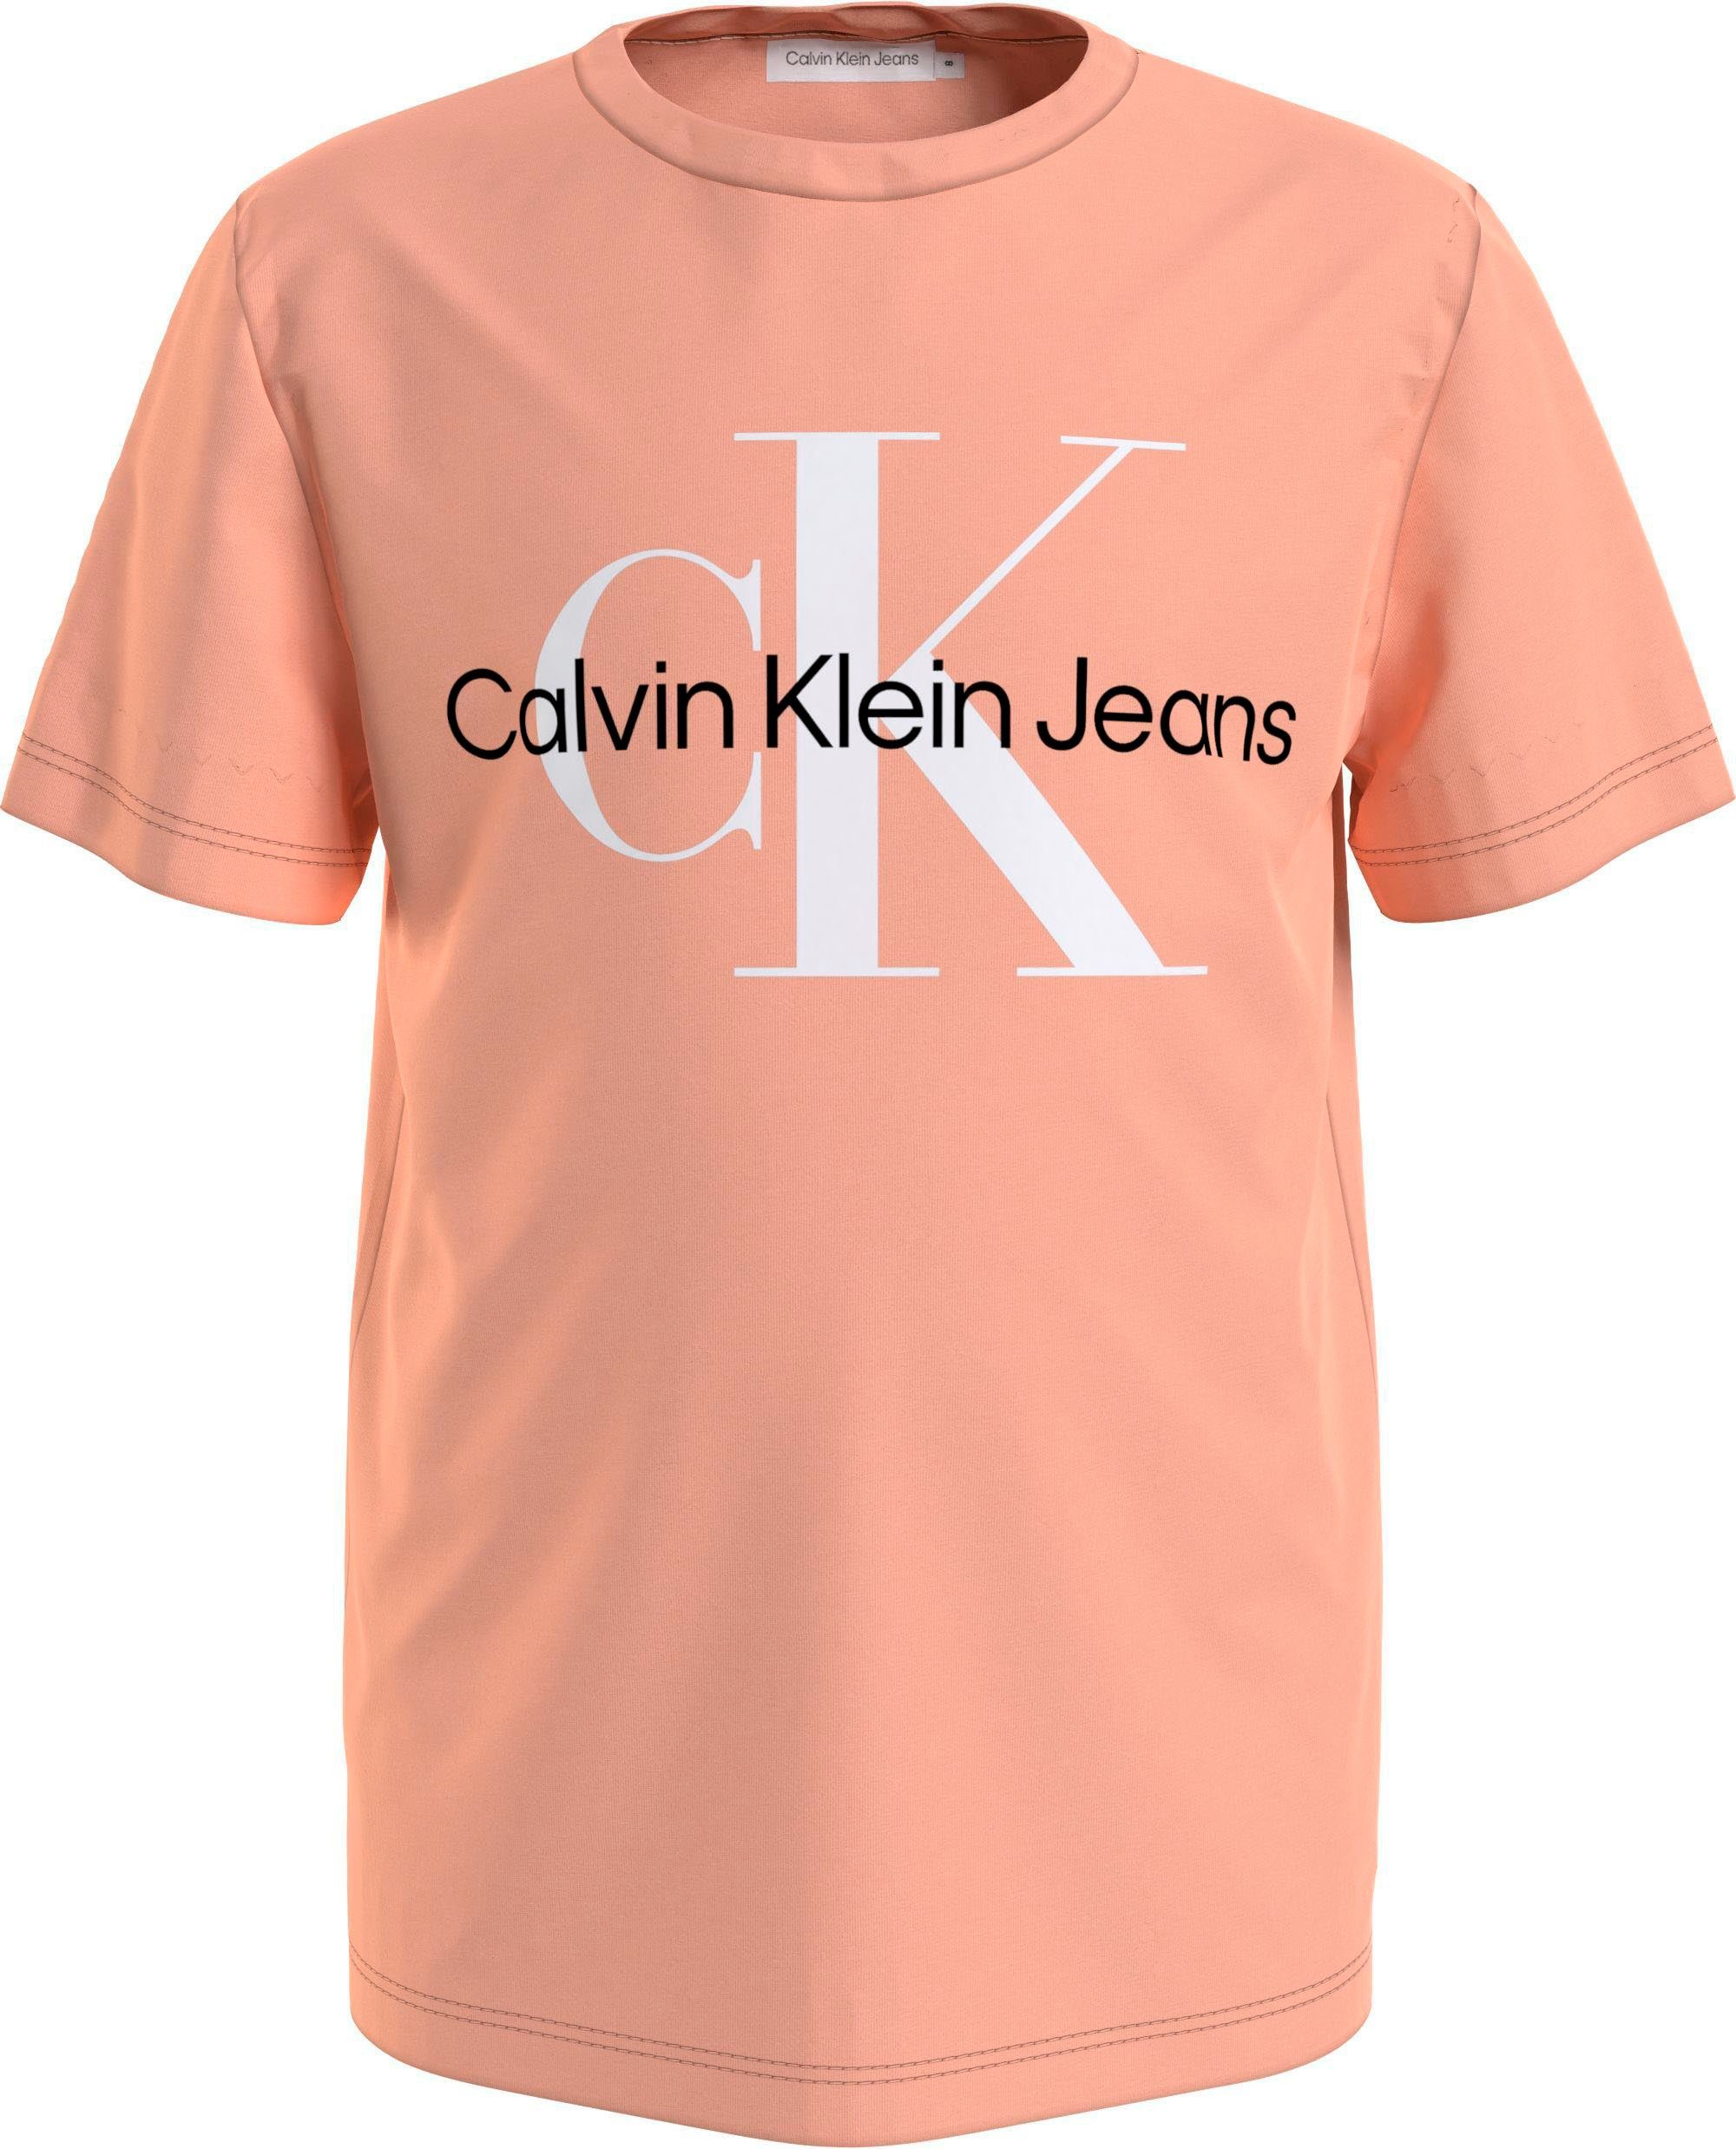 Calvin Klein Jeans Jungen hellorange Mädchen und MiniMe,für Kids MONOGRAM T-SHIRT LOGO Junior Kinder T-Shirt